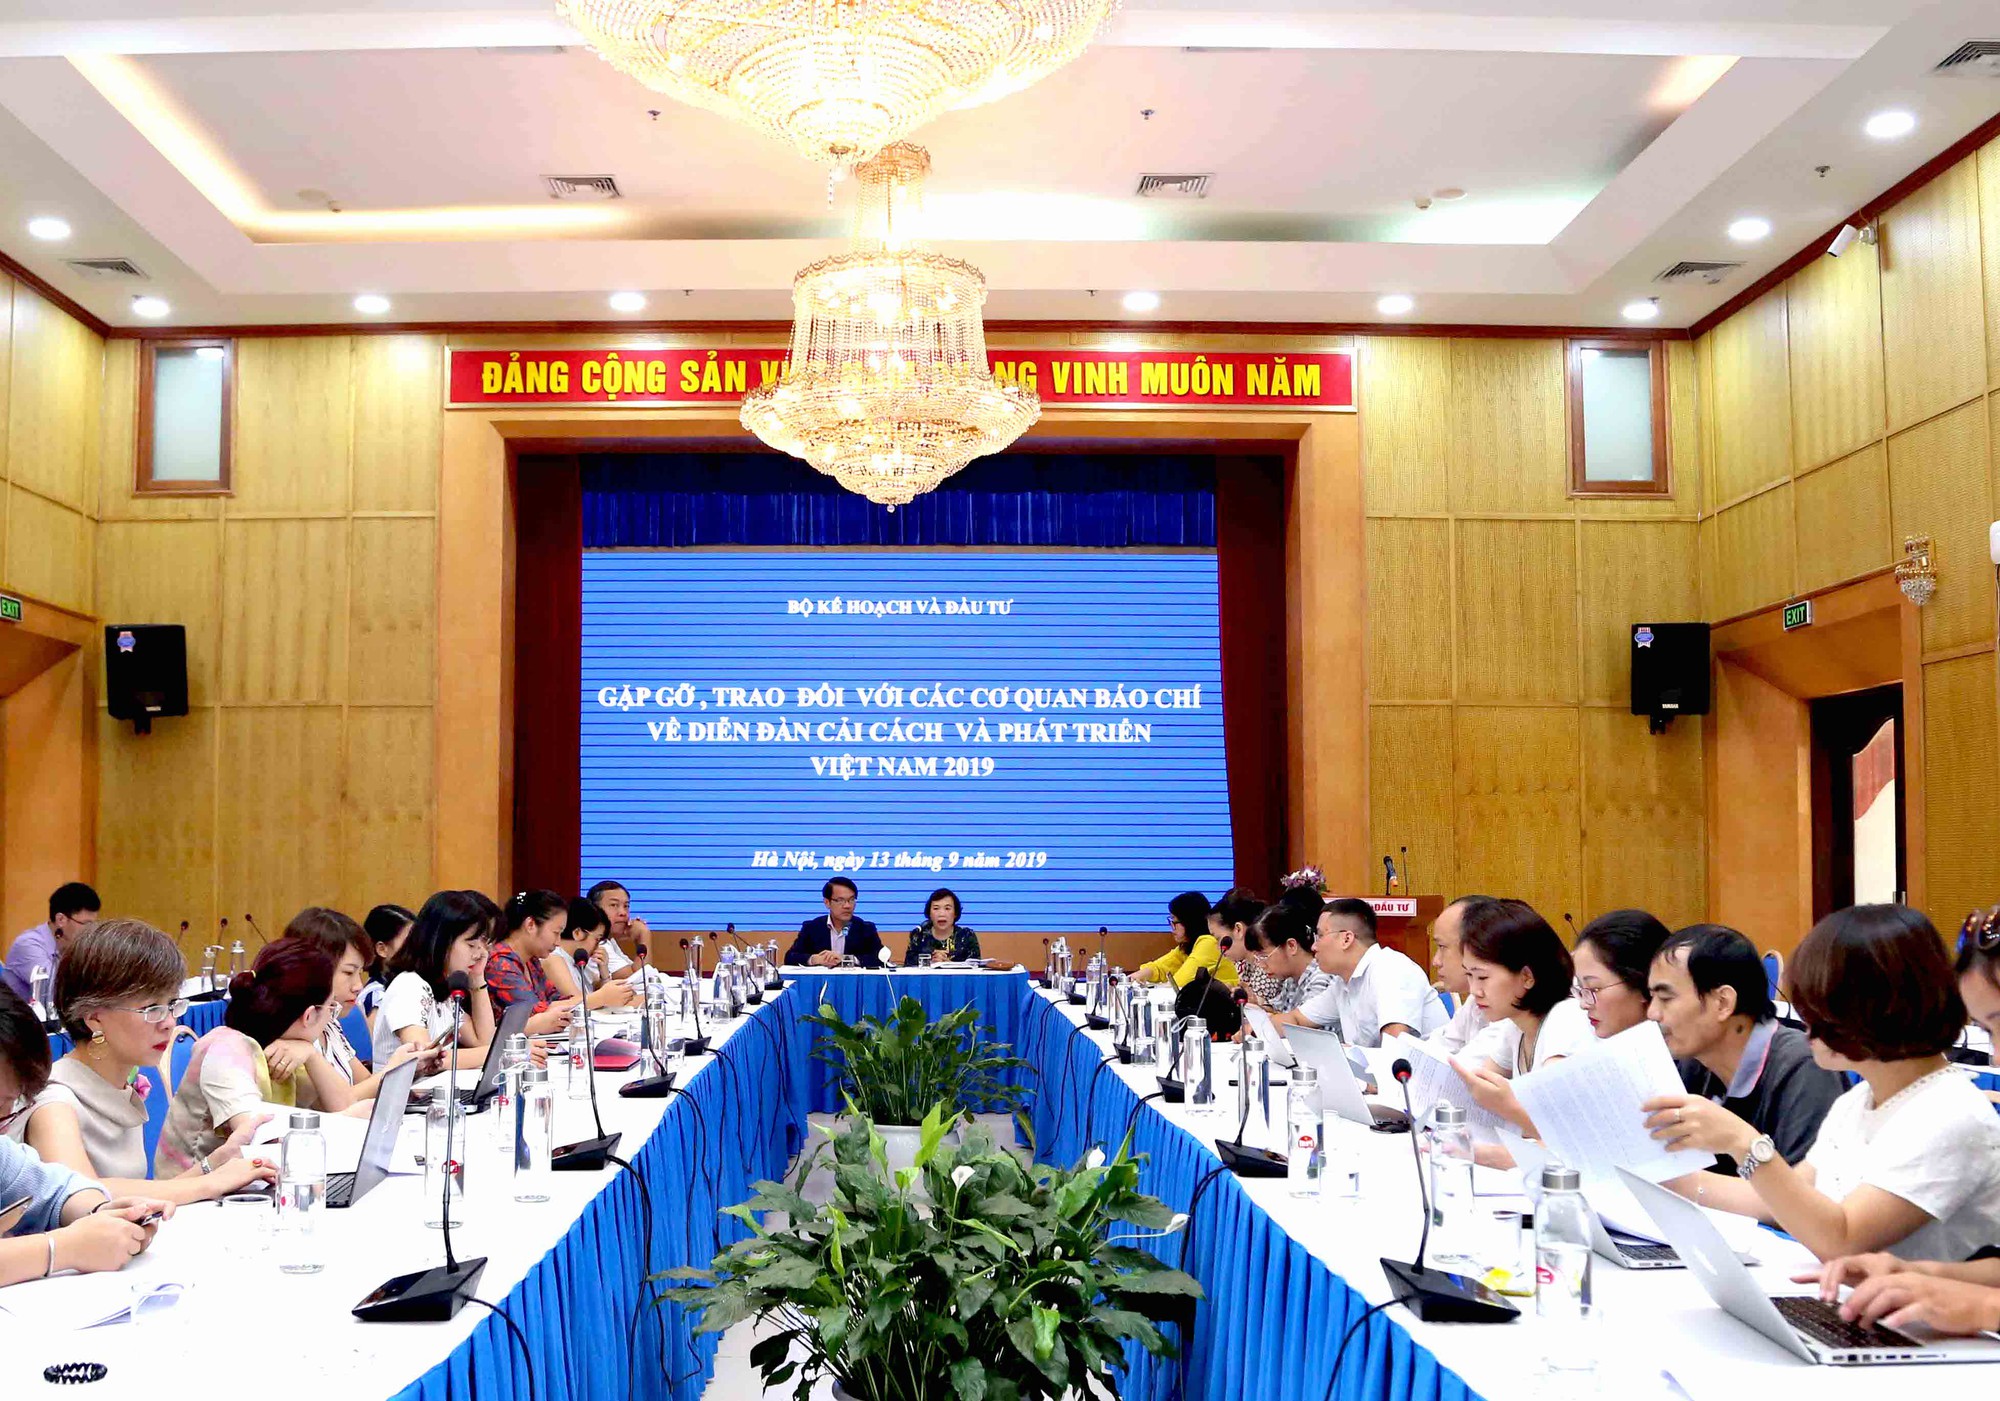 Thủ tướng sẽ dự Diễn đàn cải cách và phát triển Việt Nam 2019 - Ảnh 1.